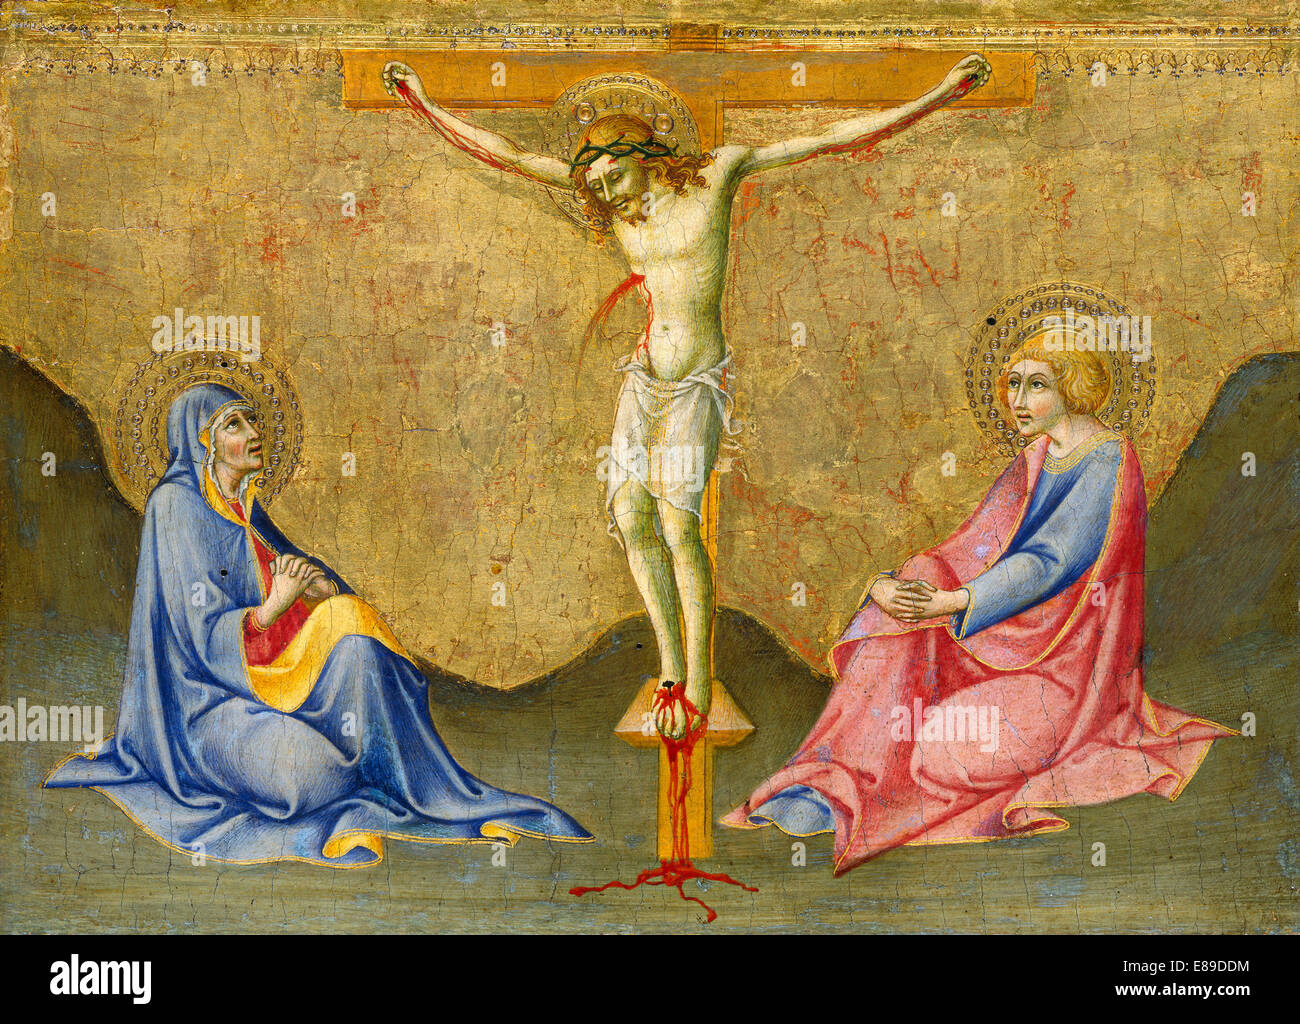 Sano di Pietro, The Crucifixion, Italian, 1405 - 1481, c. 1445/1450, tempera on panel Stock Photo